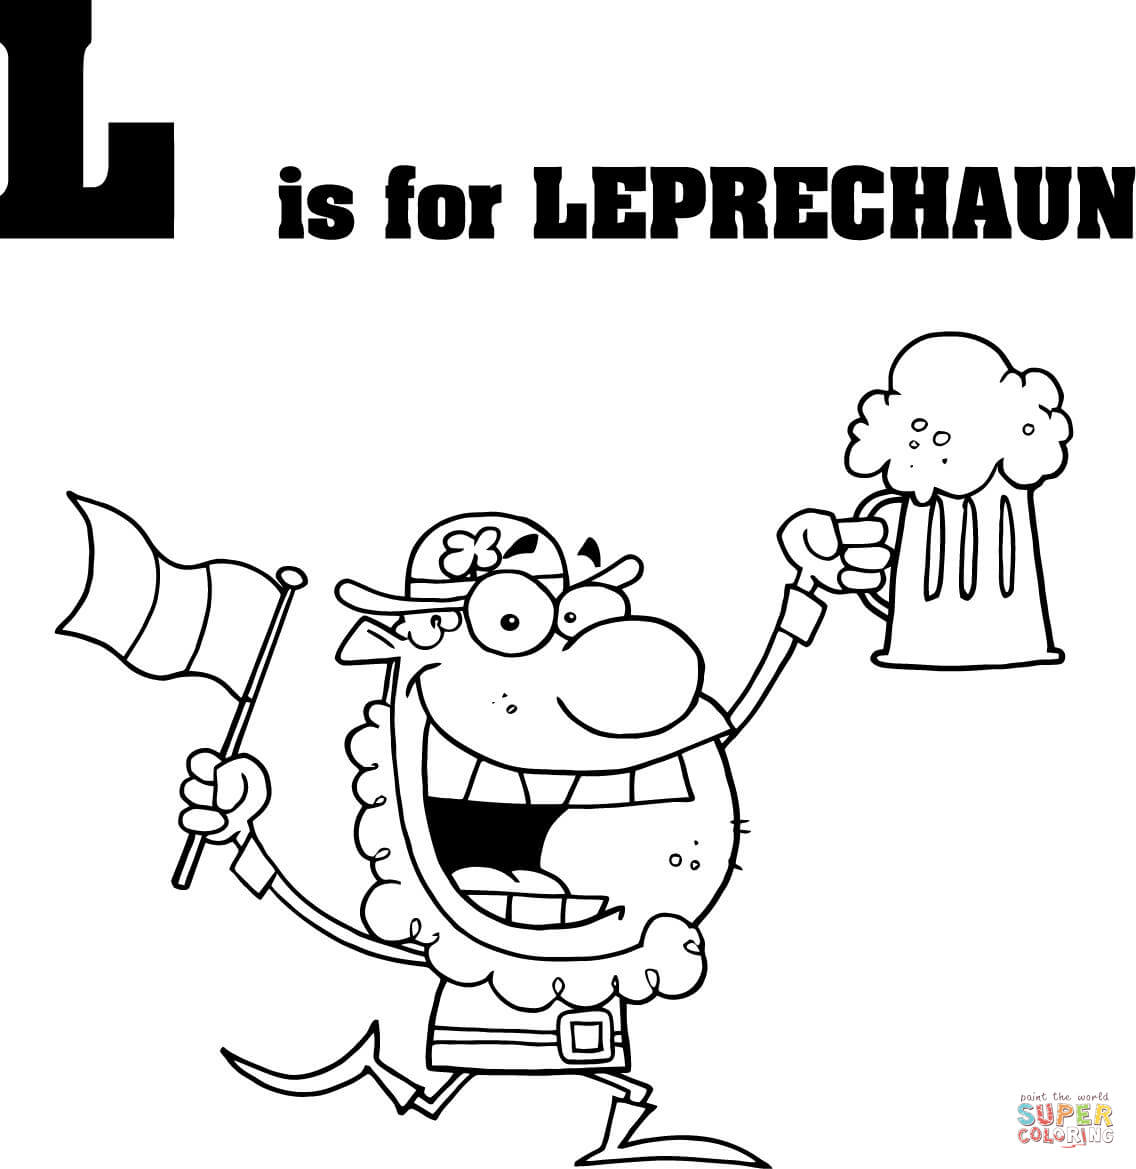 字母 L 代表 Leprechaun（来自字母 L）